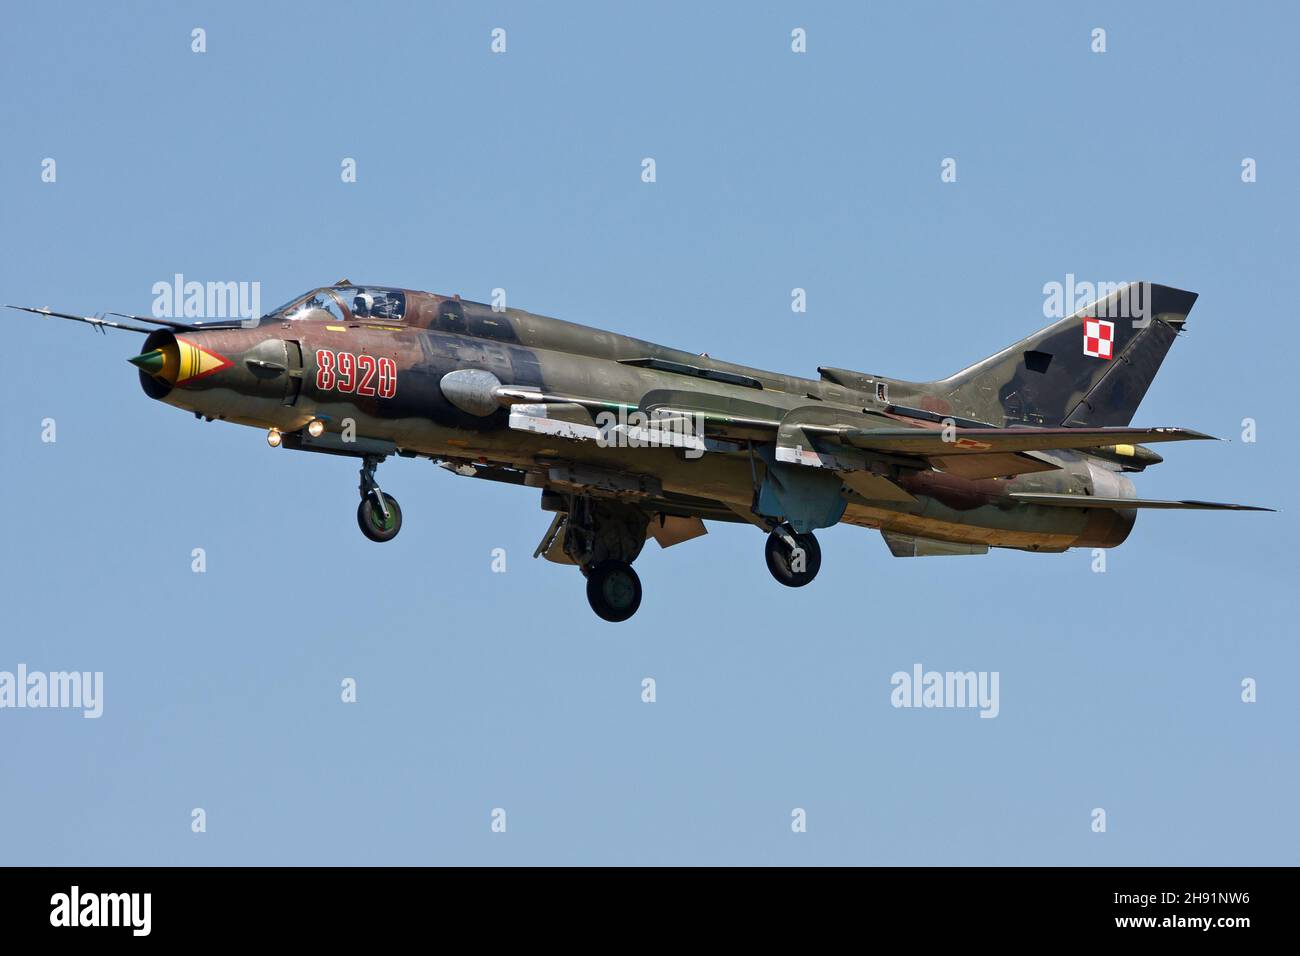 ZELTWEG, AUTRICHE - 11 août 2013 : l'armée de l'air polonaise Sukhoi su-22 Fitter débarque par une journée ensoleillée à Zeltweg, Autriche pour assister au spectacle aérien Airpower 2019 Banque D'Images